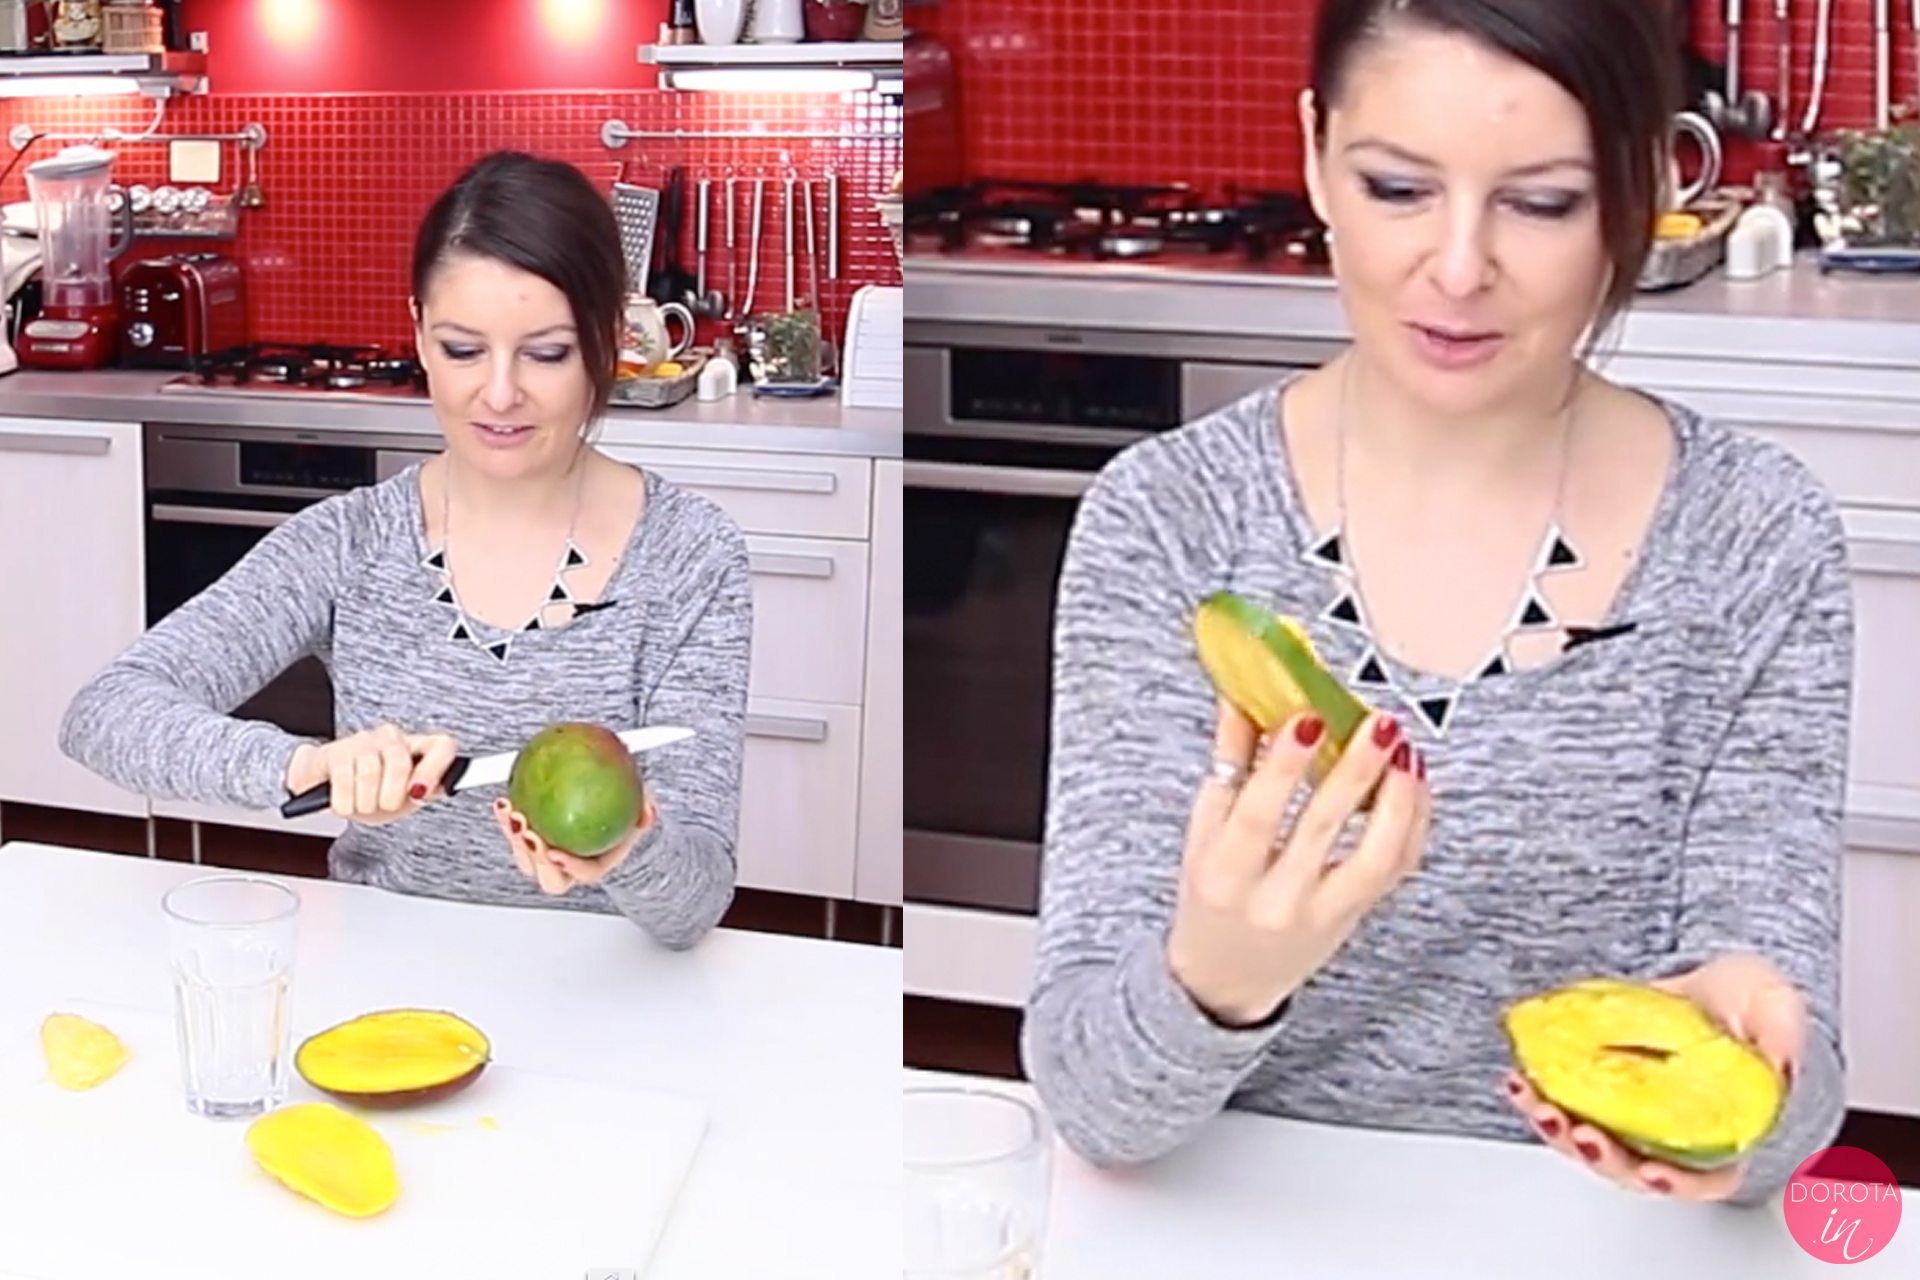 Jak mango - obieranie mango szklanką | Dorota Kamińska